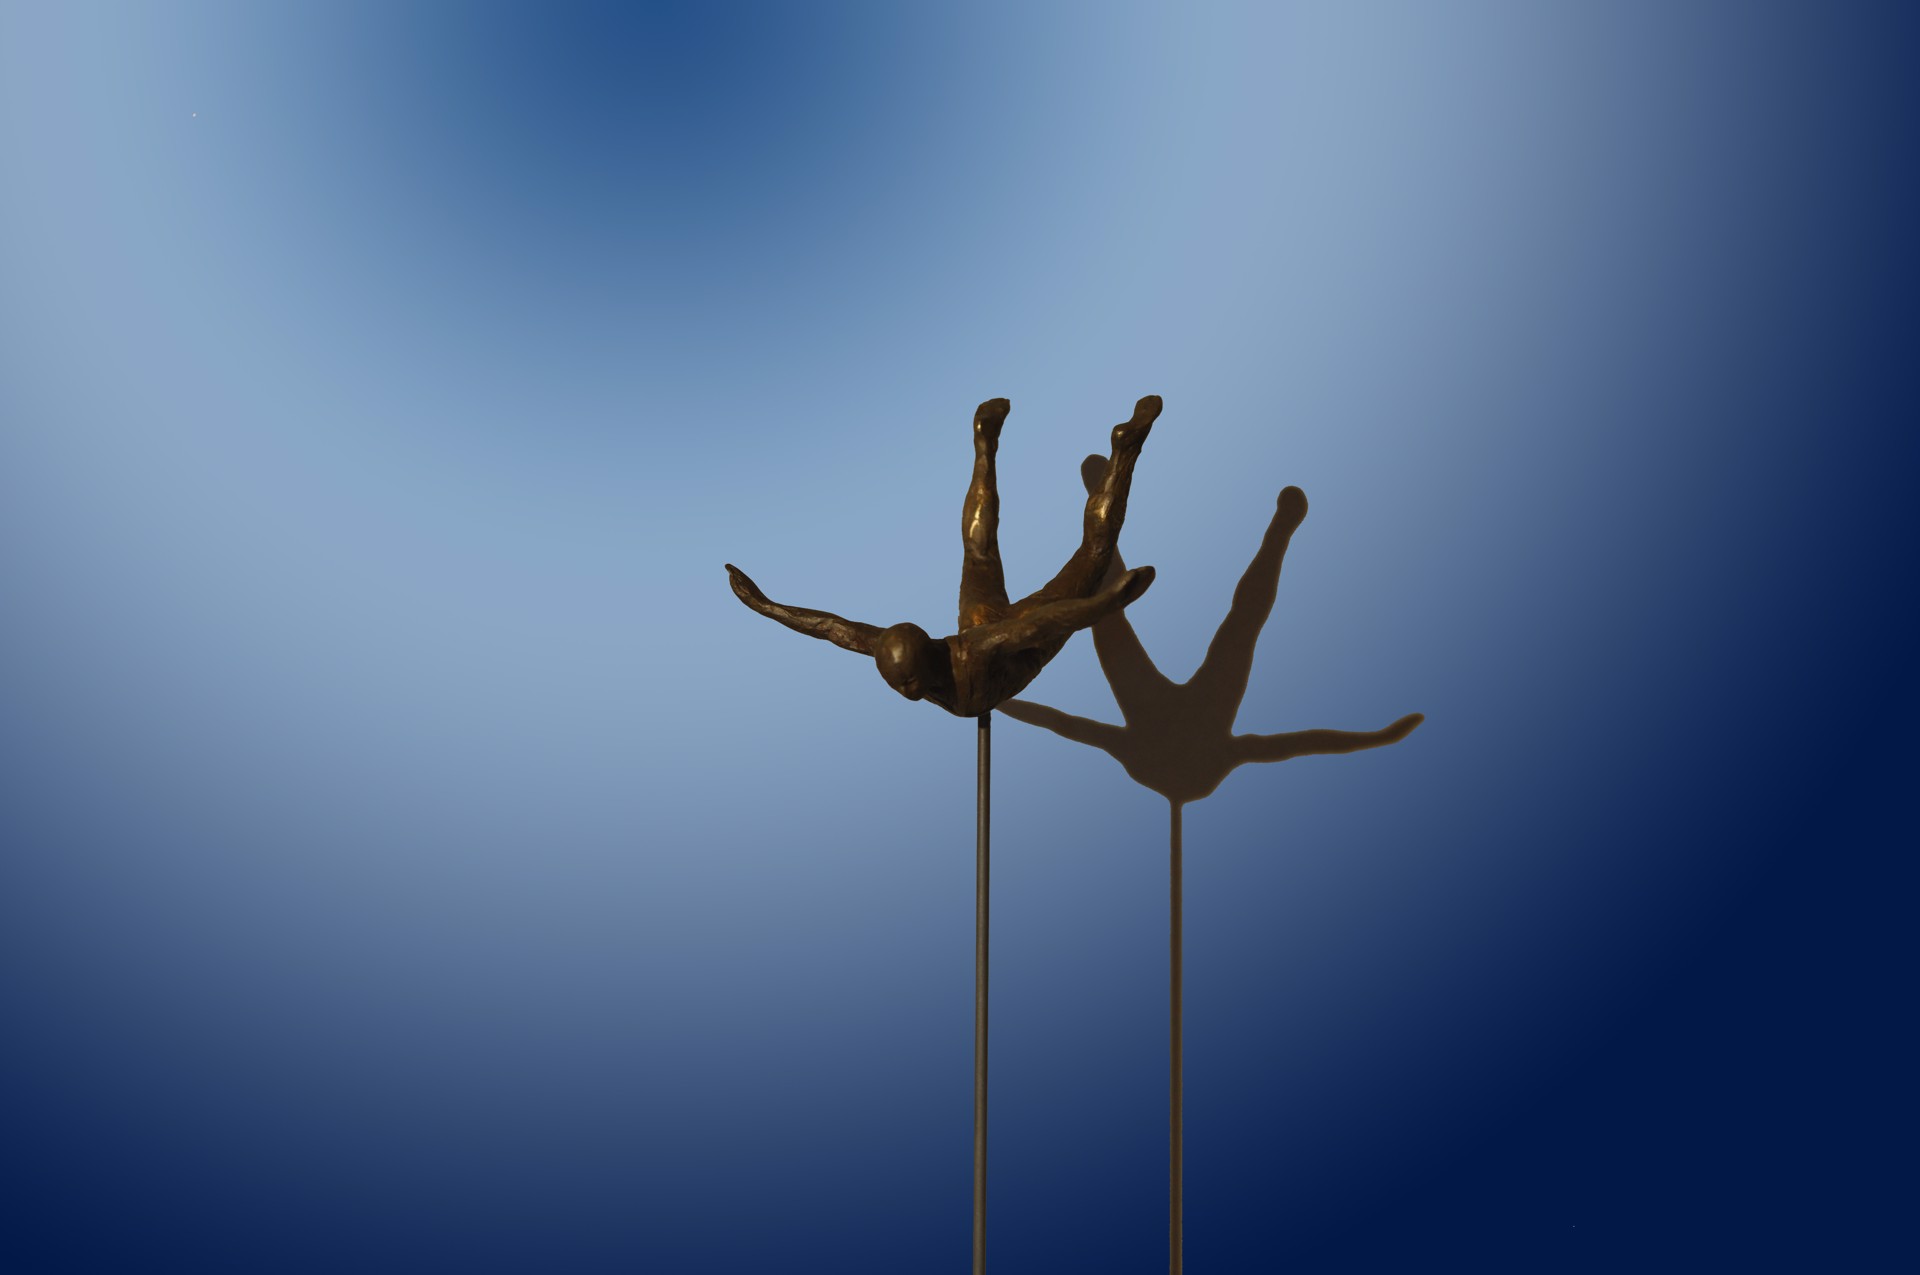 Balance Series: Free Fall by Bill Starke